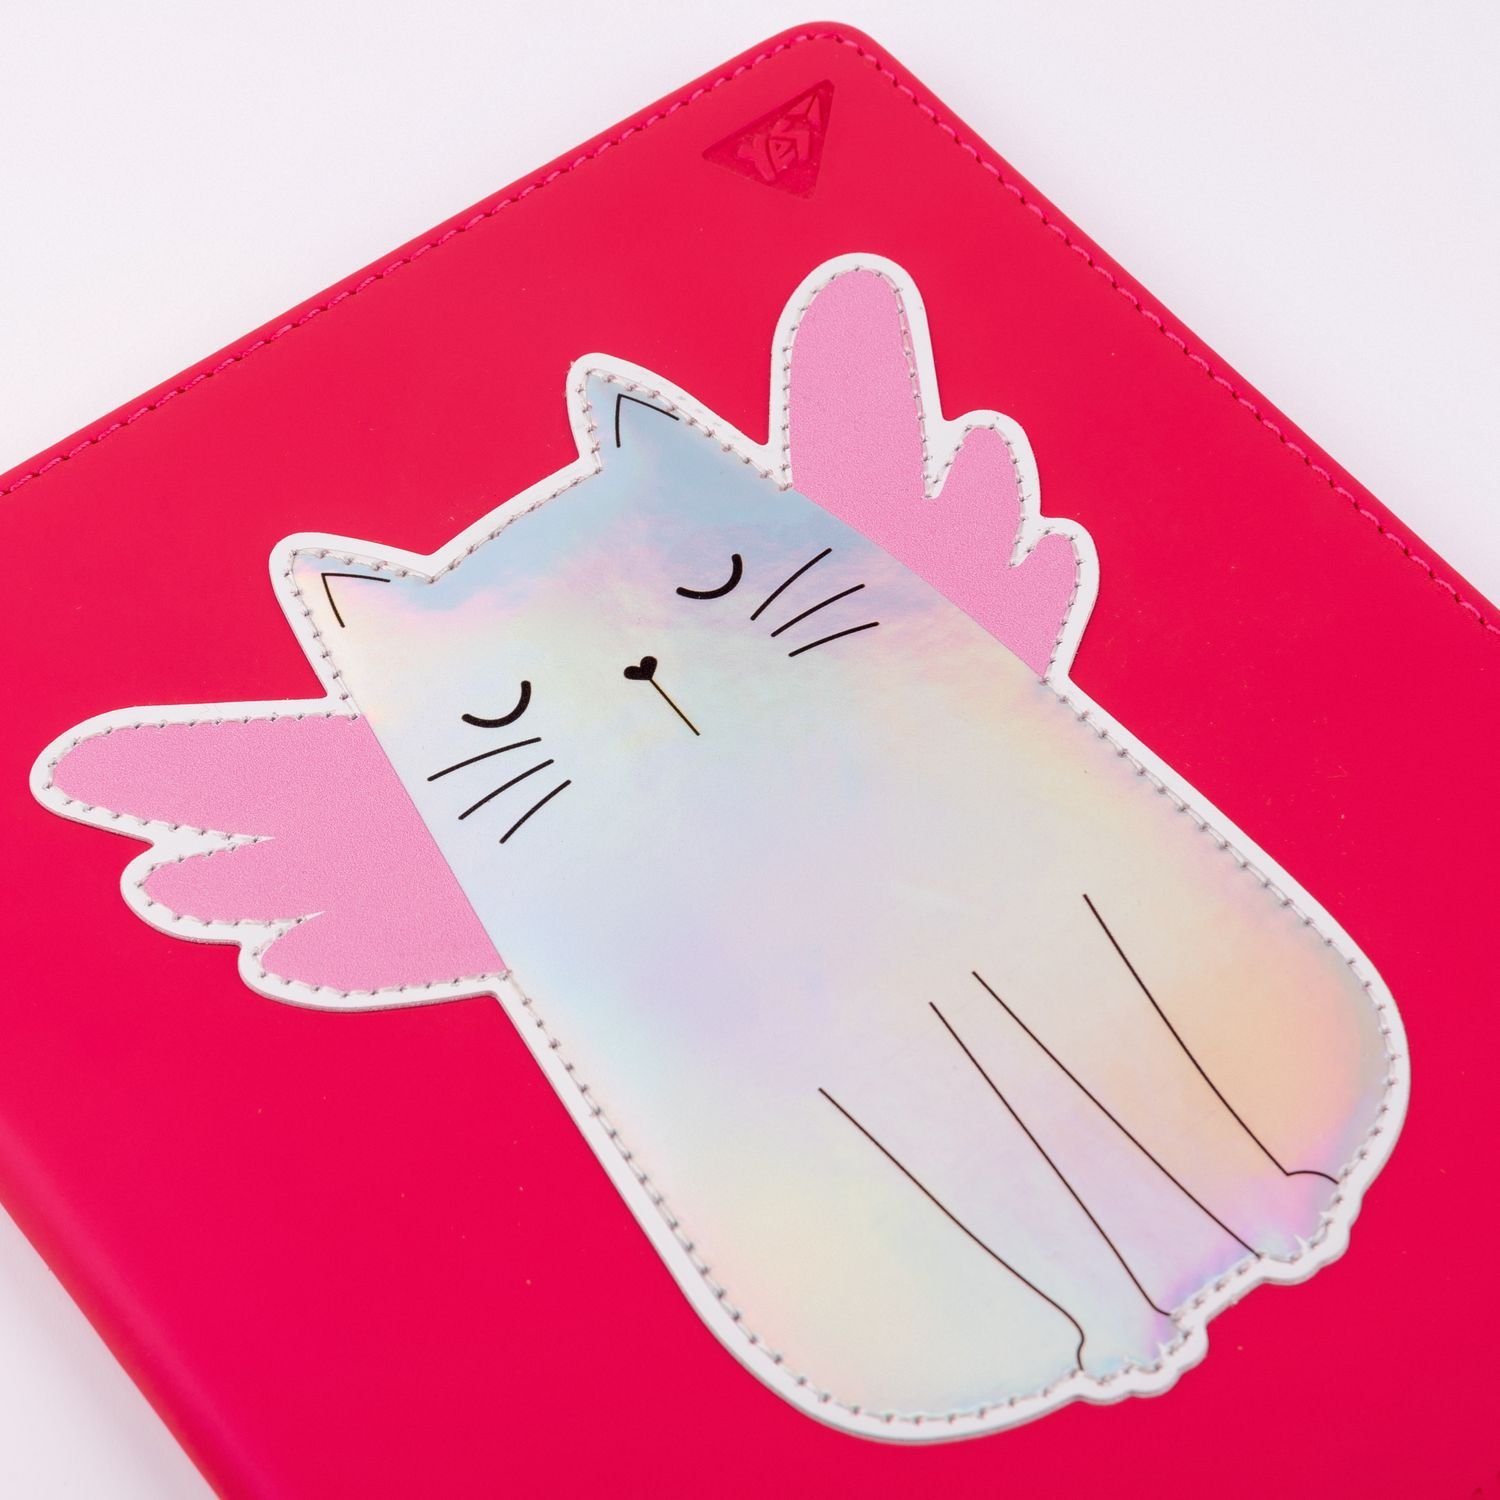 Дневник школьный Yes PU твердый Cat. Angelcat, тиснение, голографическая аппликация с печатью (911401) - фото 3